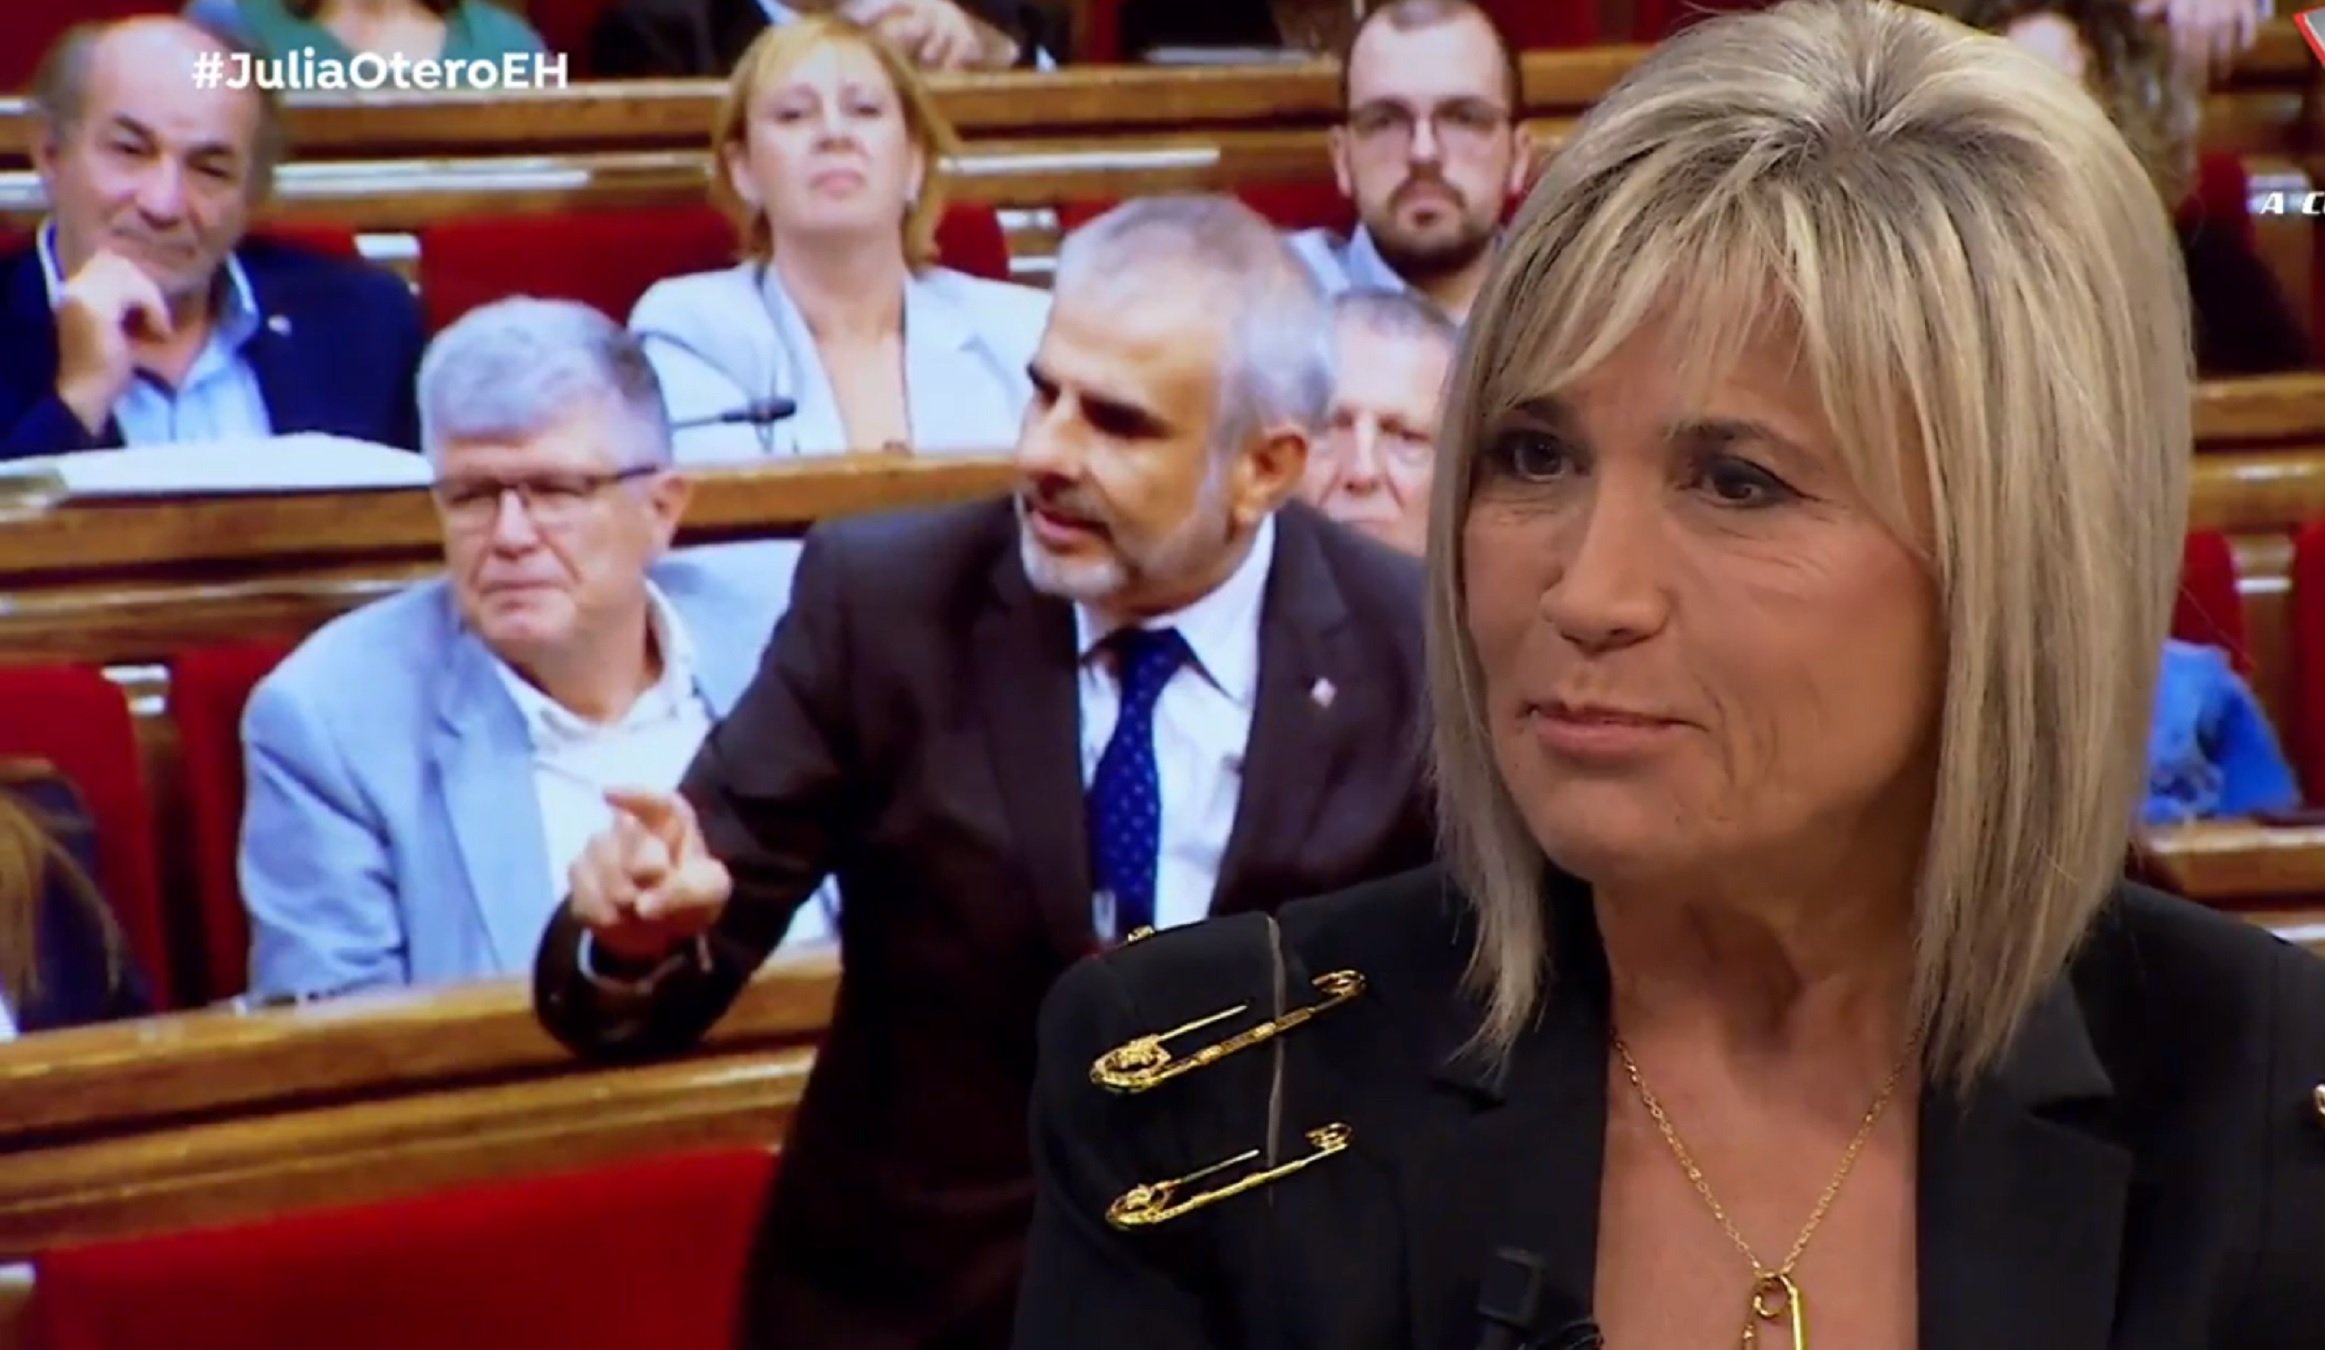 La xarxa insulta Júlia Otero per defensar Catalunya: "pija vieja giliprogre"